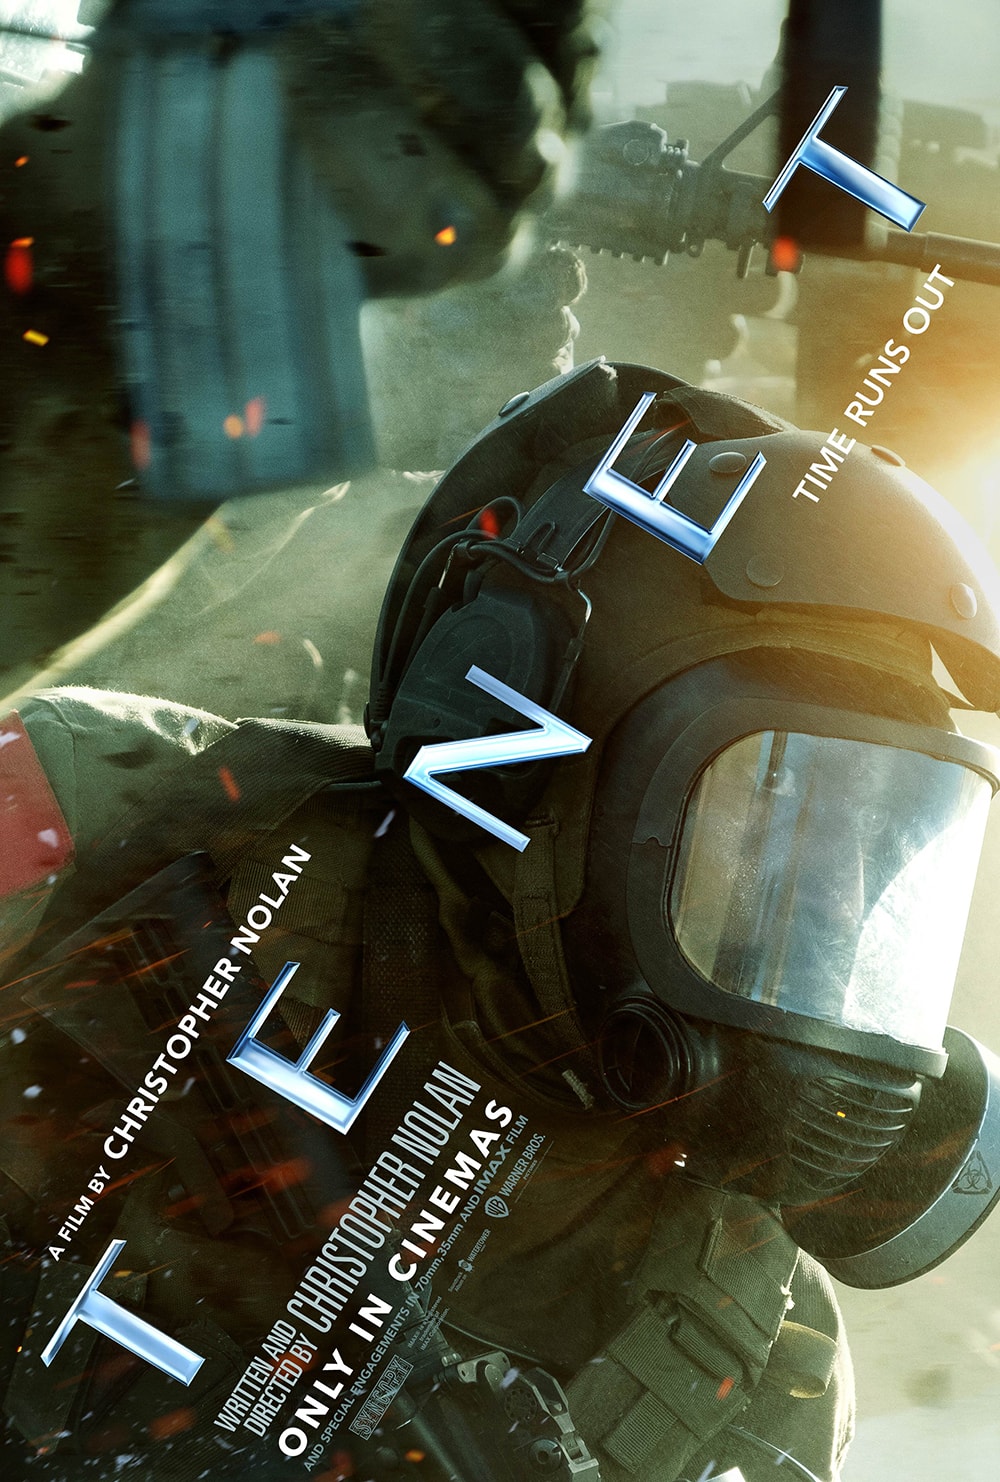 Christopher Nolan 最新科幻電影《天能 Tenet》國際海報正式發佈